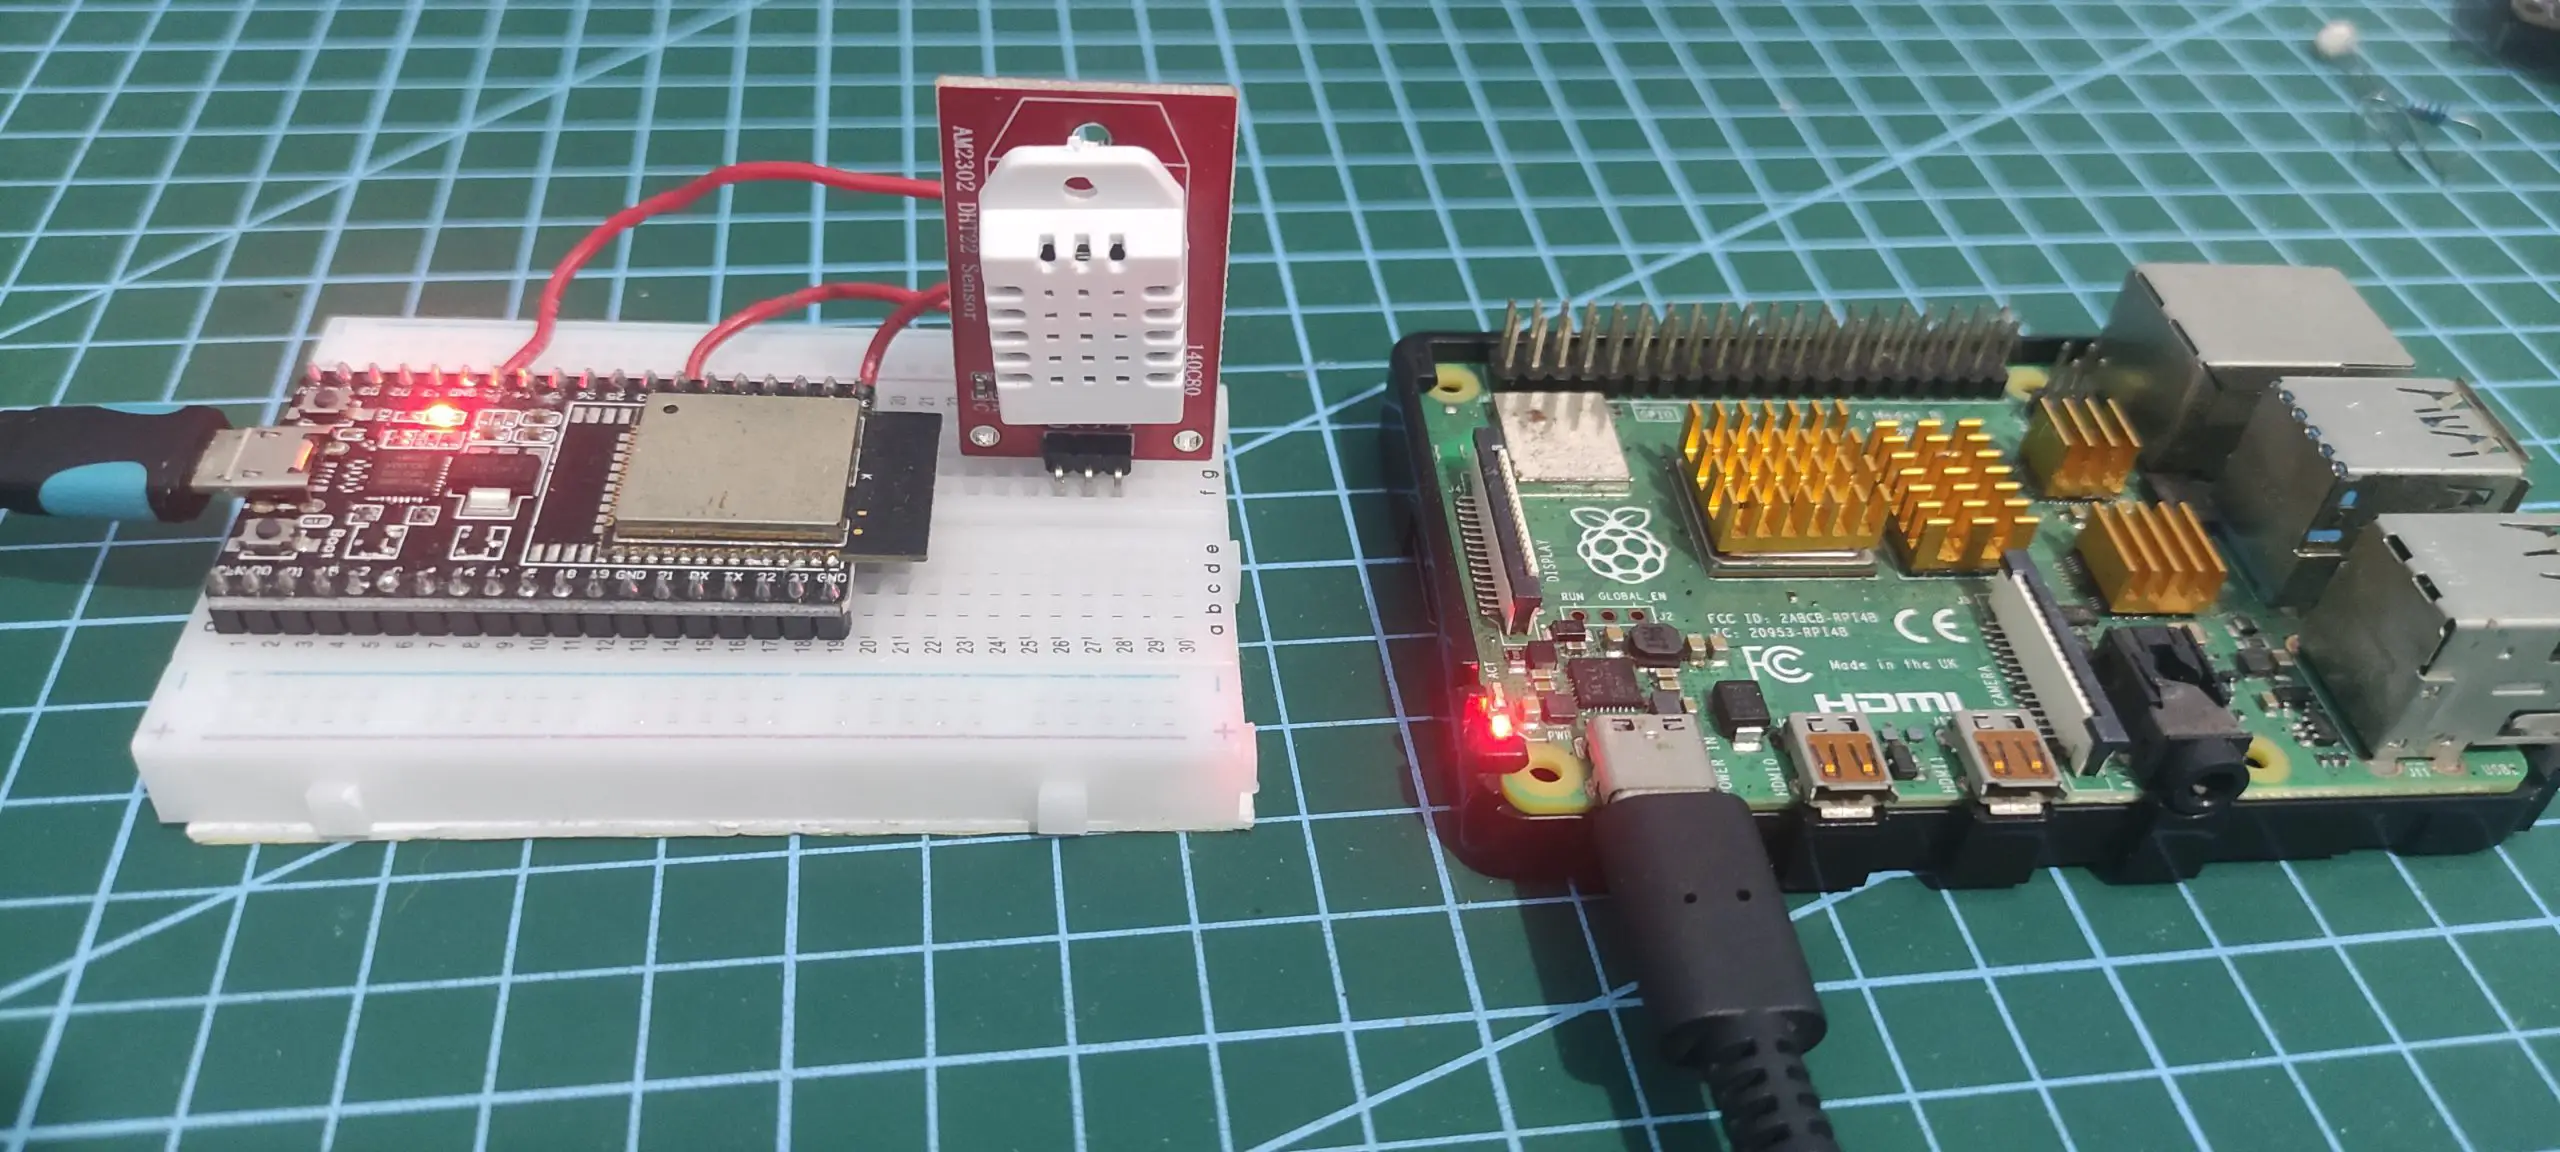 Node-Red - Arduino -IoT Dashboard